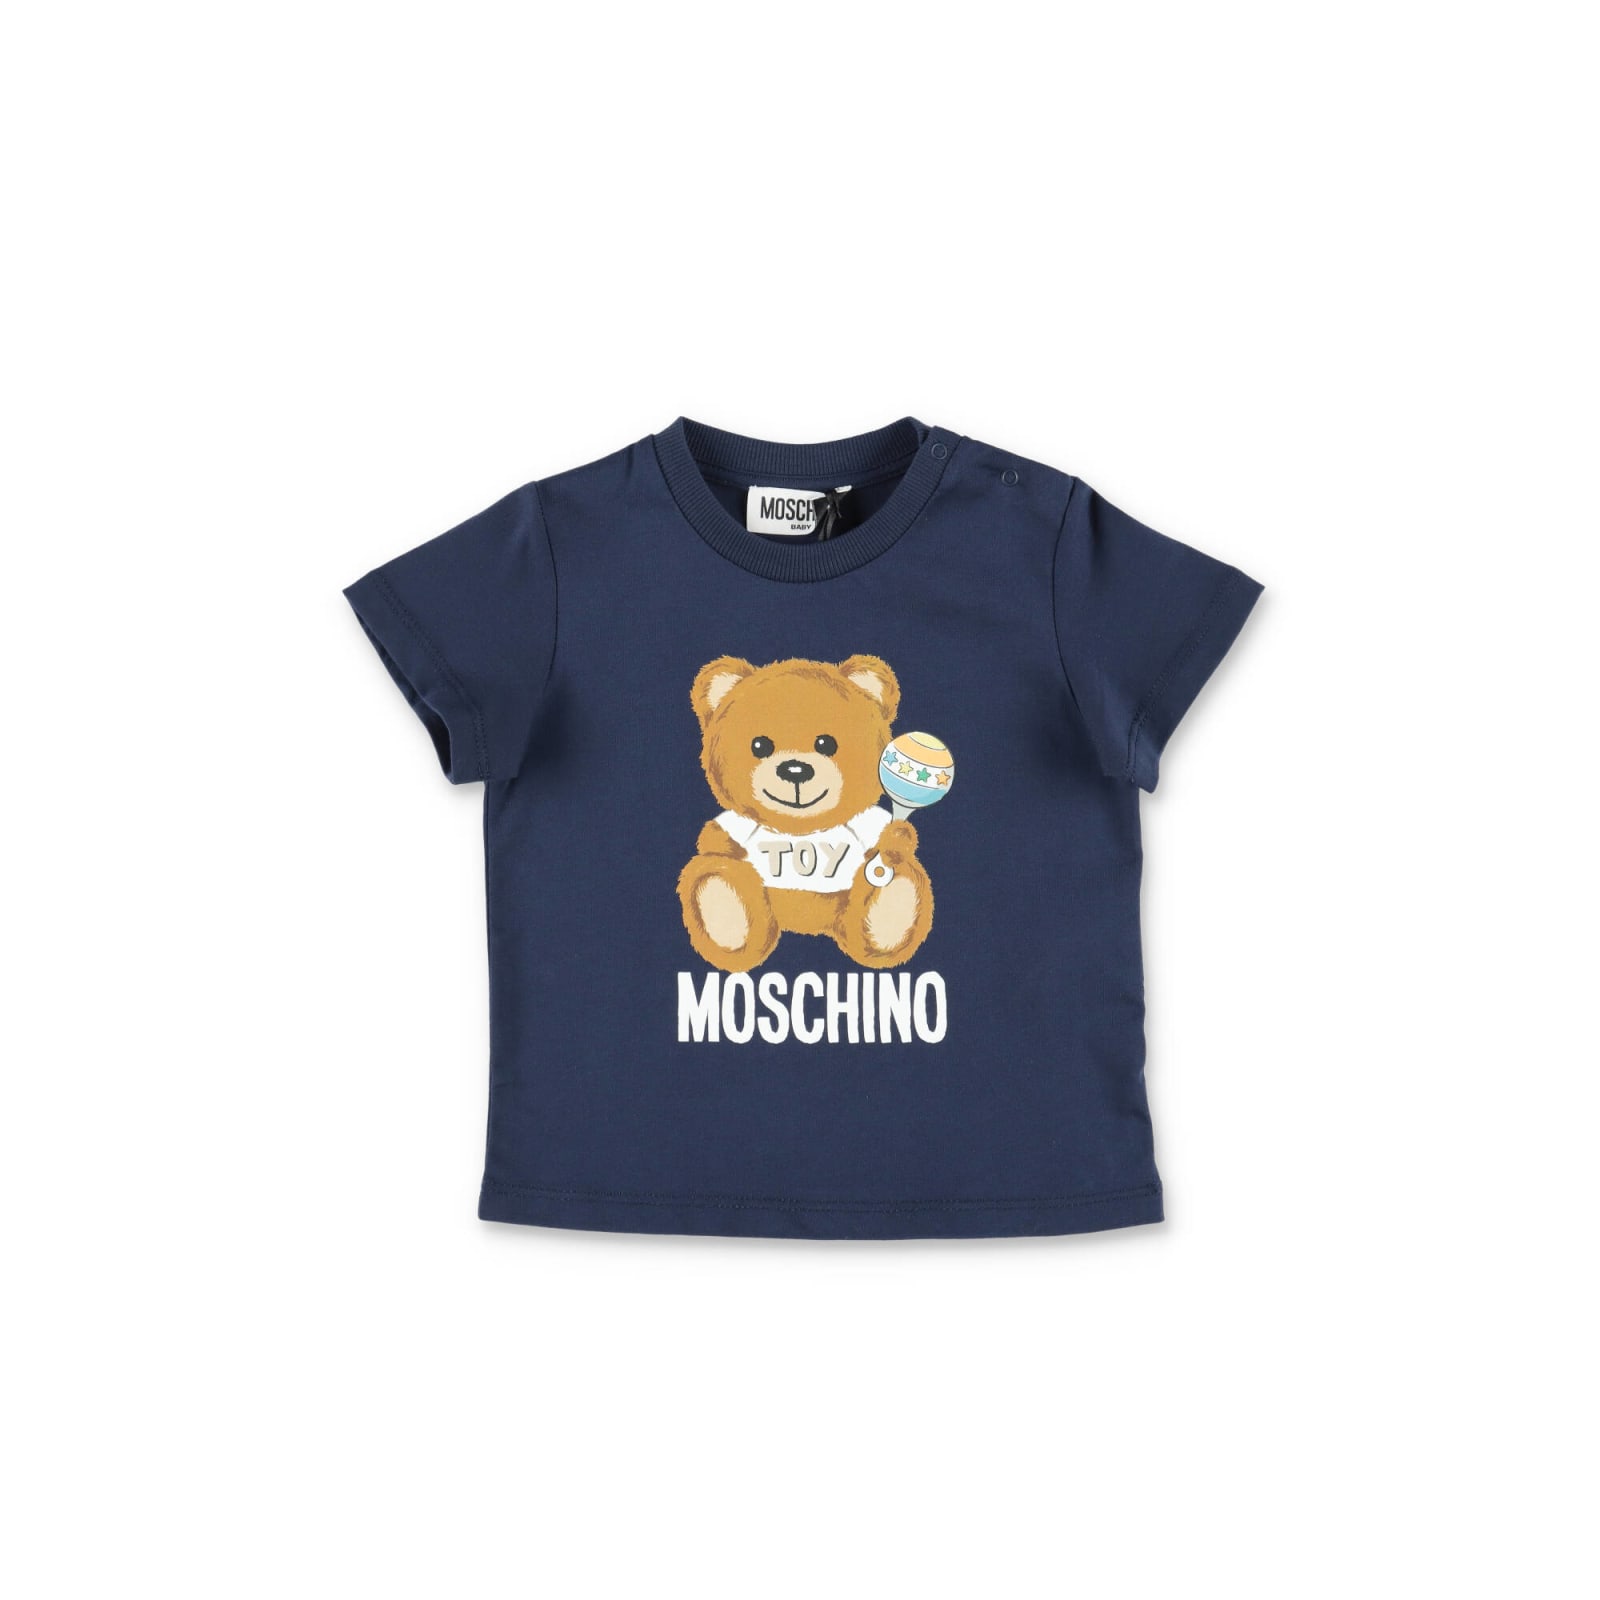 Moschino T-shirt Teddy Bear Blu In Jersey Di Cotone Baby Boy